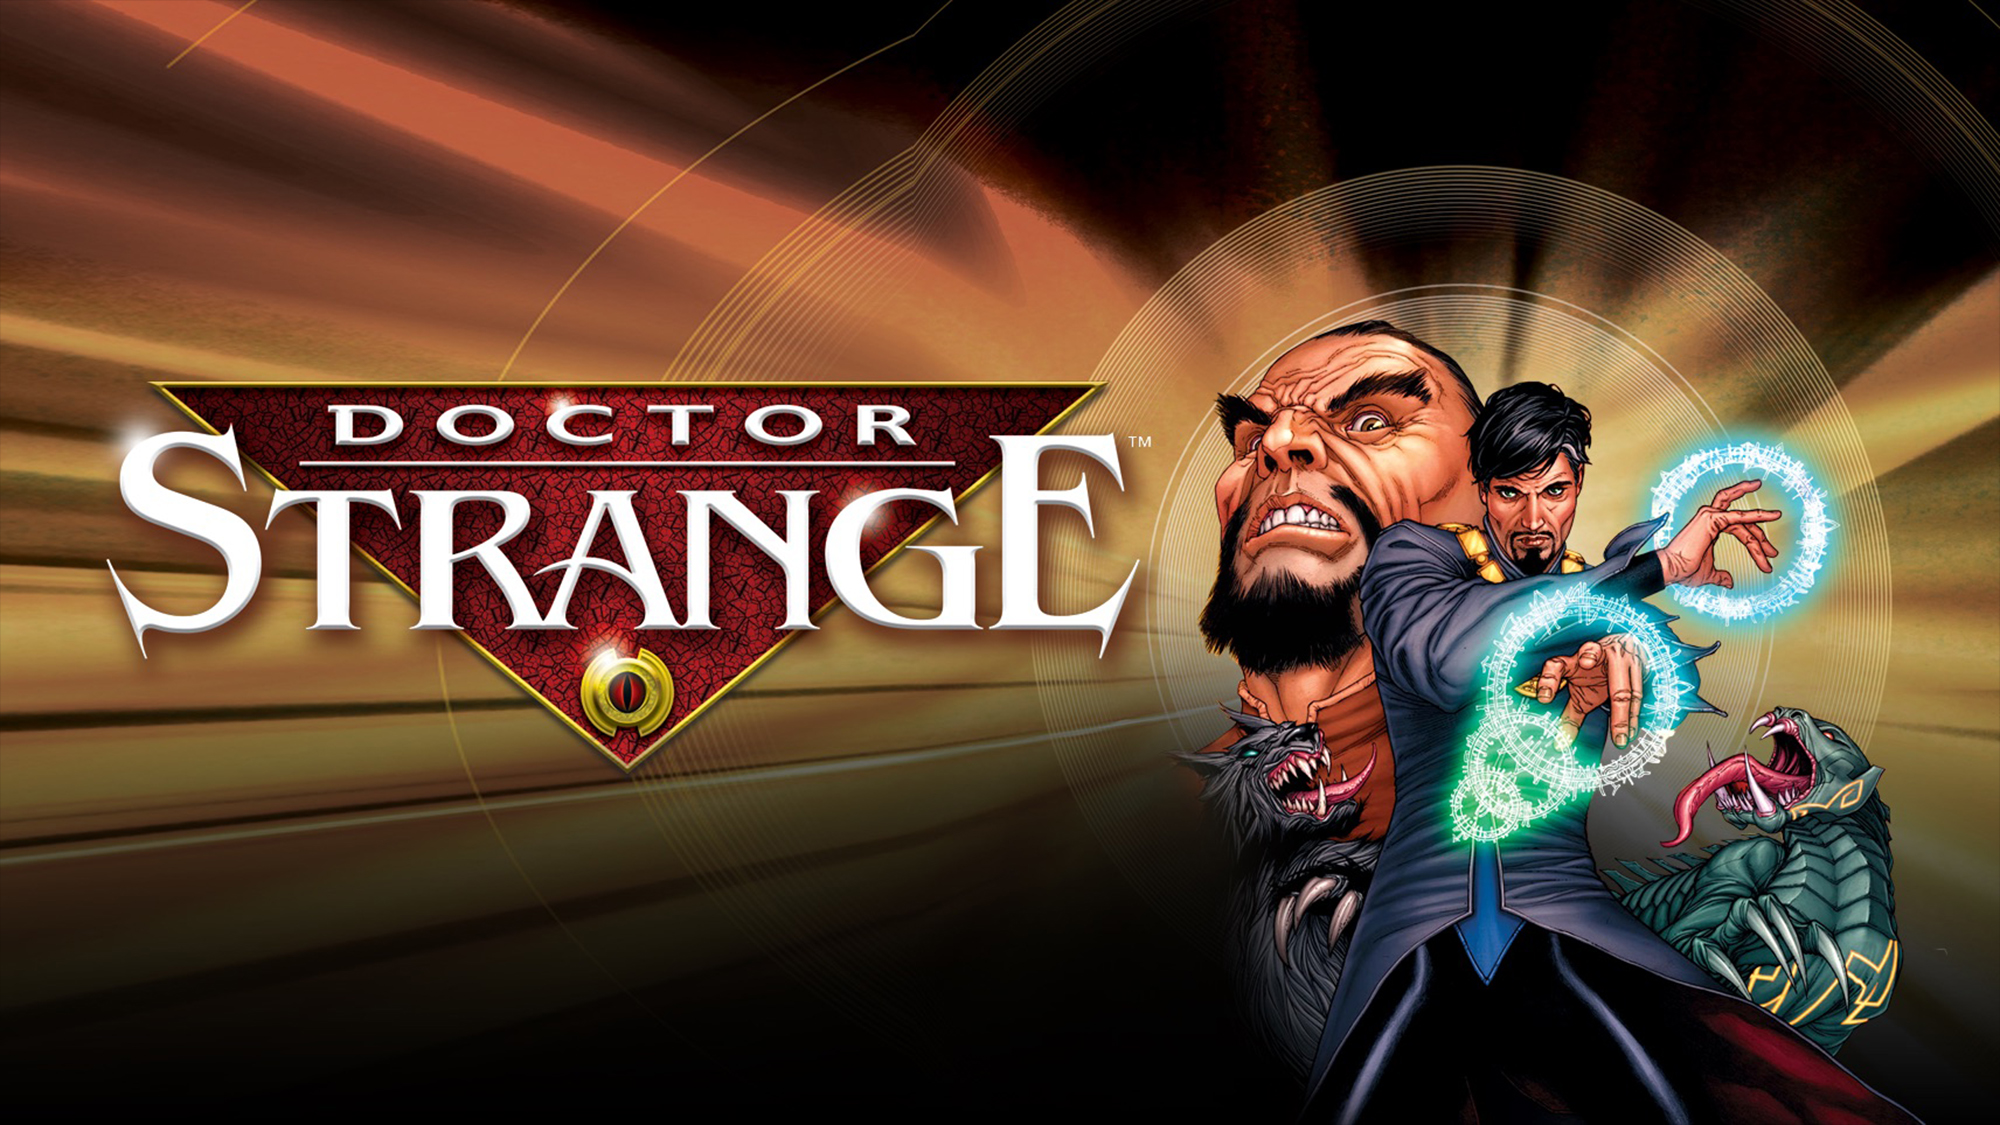 Movie Doctor Strange: The Sorcerer Supreme HD Wallpaper | Background Image